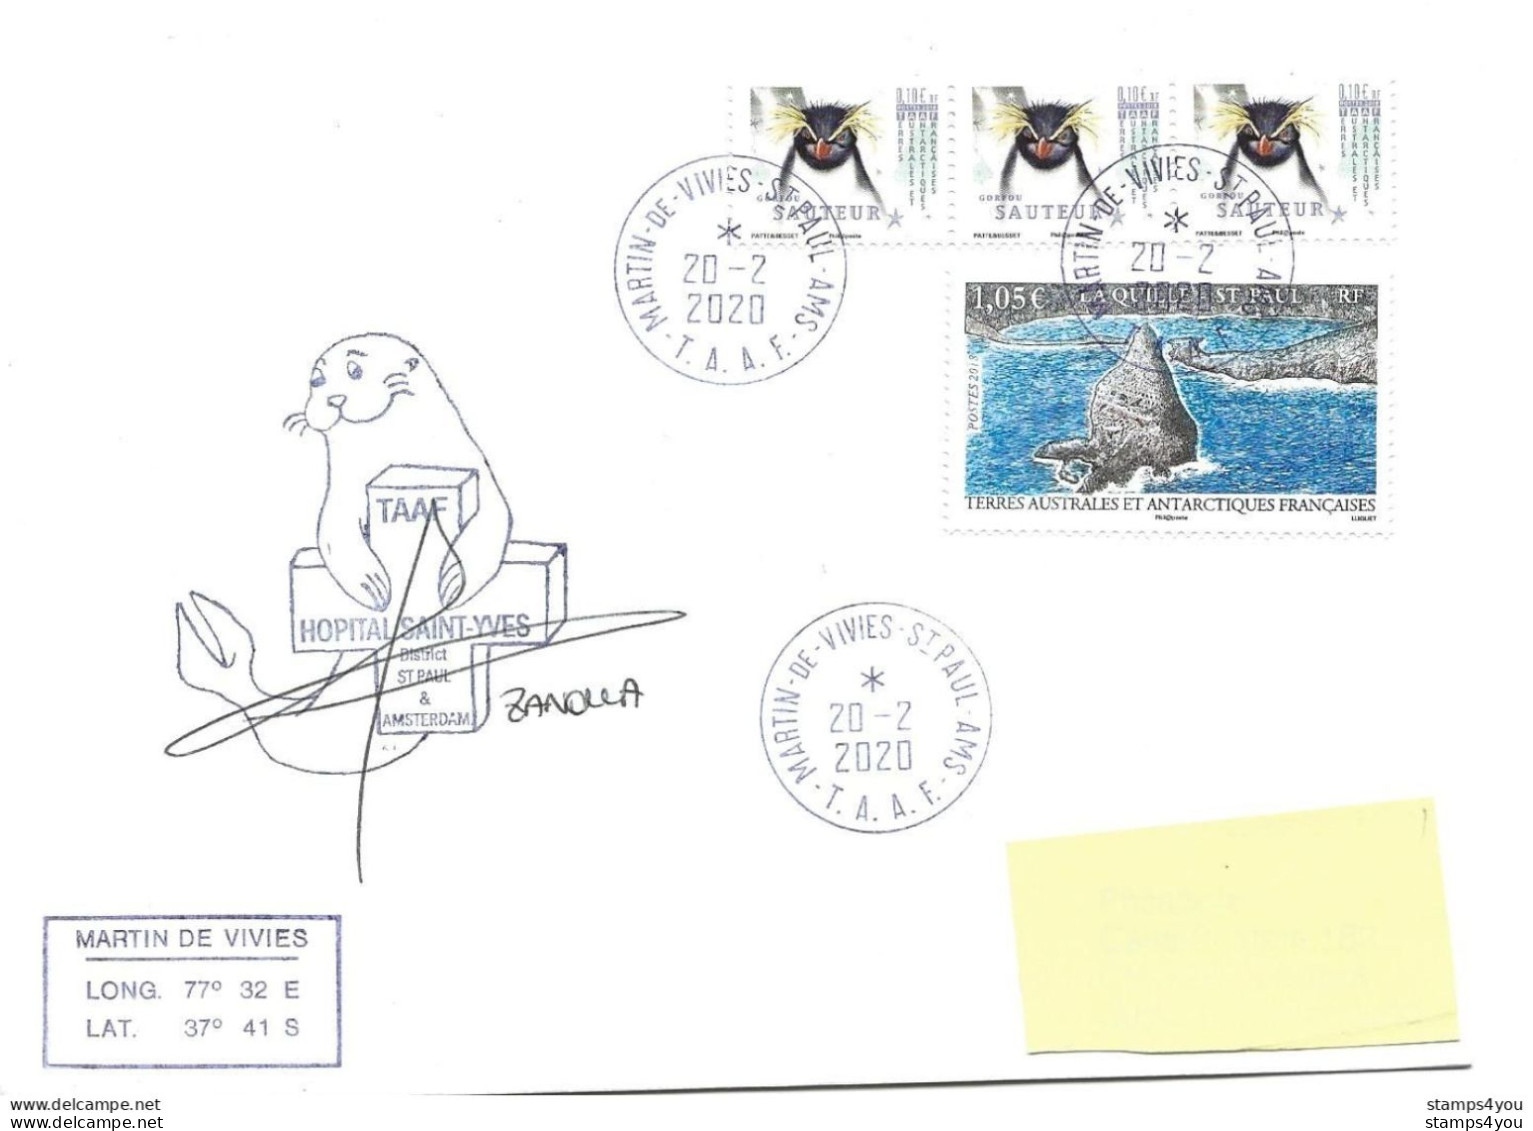 255 - 22 - Enveloppe TAAF St Paul Amsterdam Cachet Illustré 2020 - Bases Antarctiques